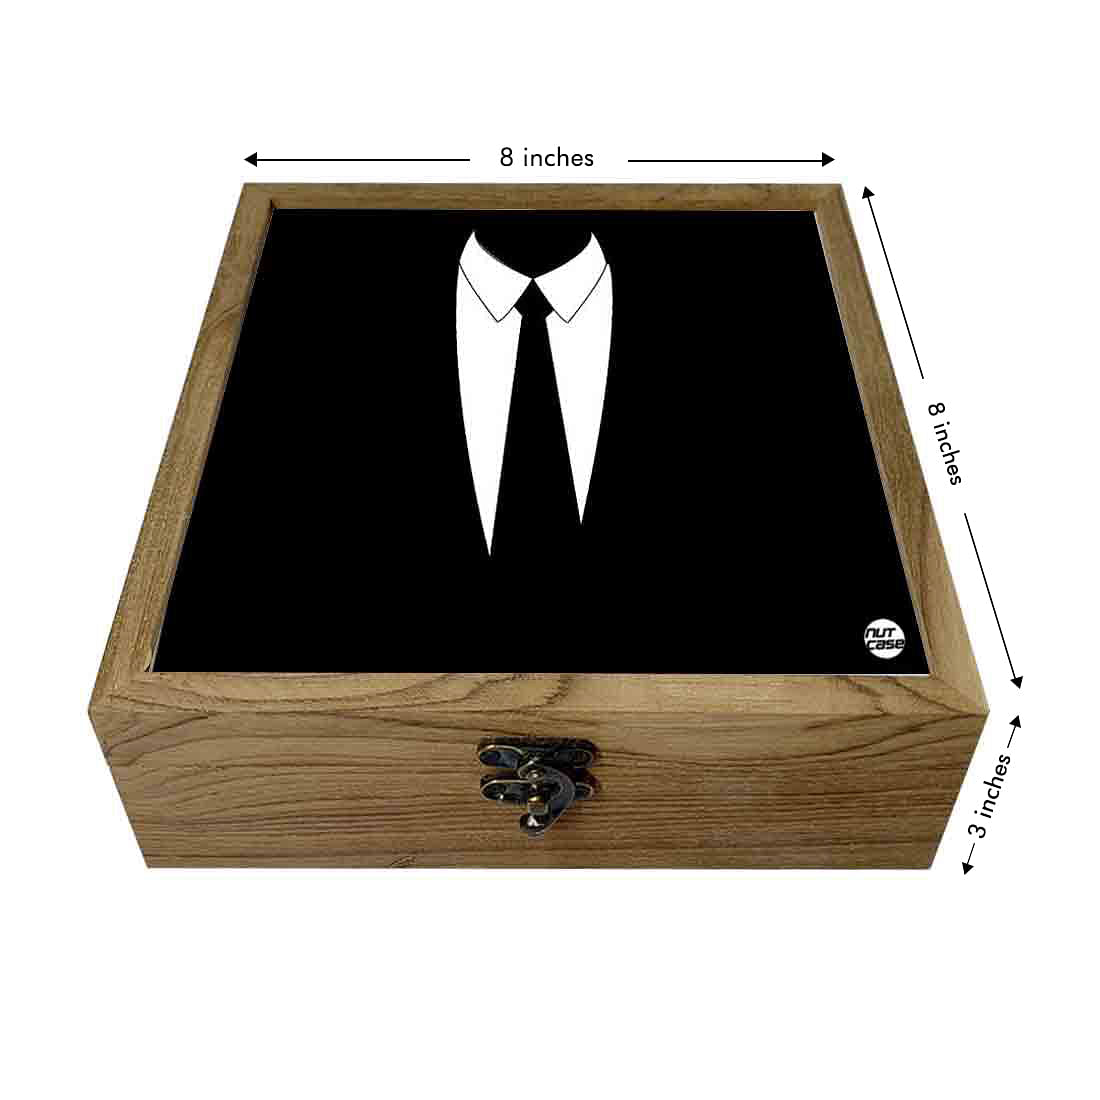 Hip Flask Gift Box -Hip Flasks For Men- Gentleman Suit Up Nutcase